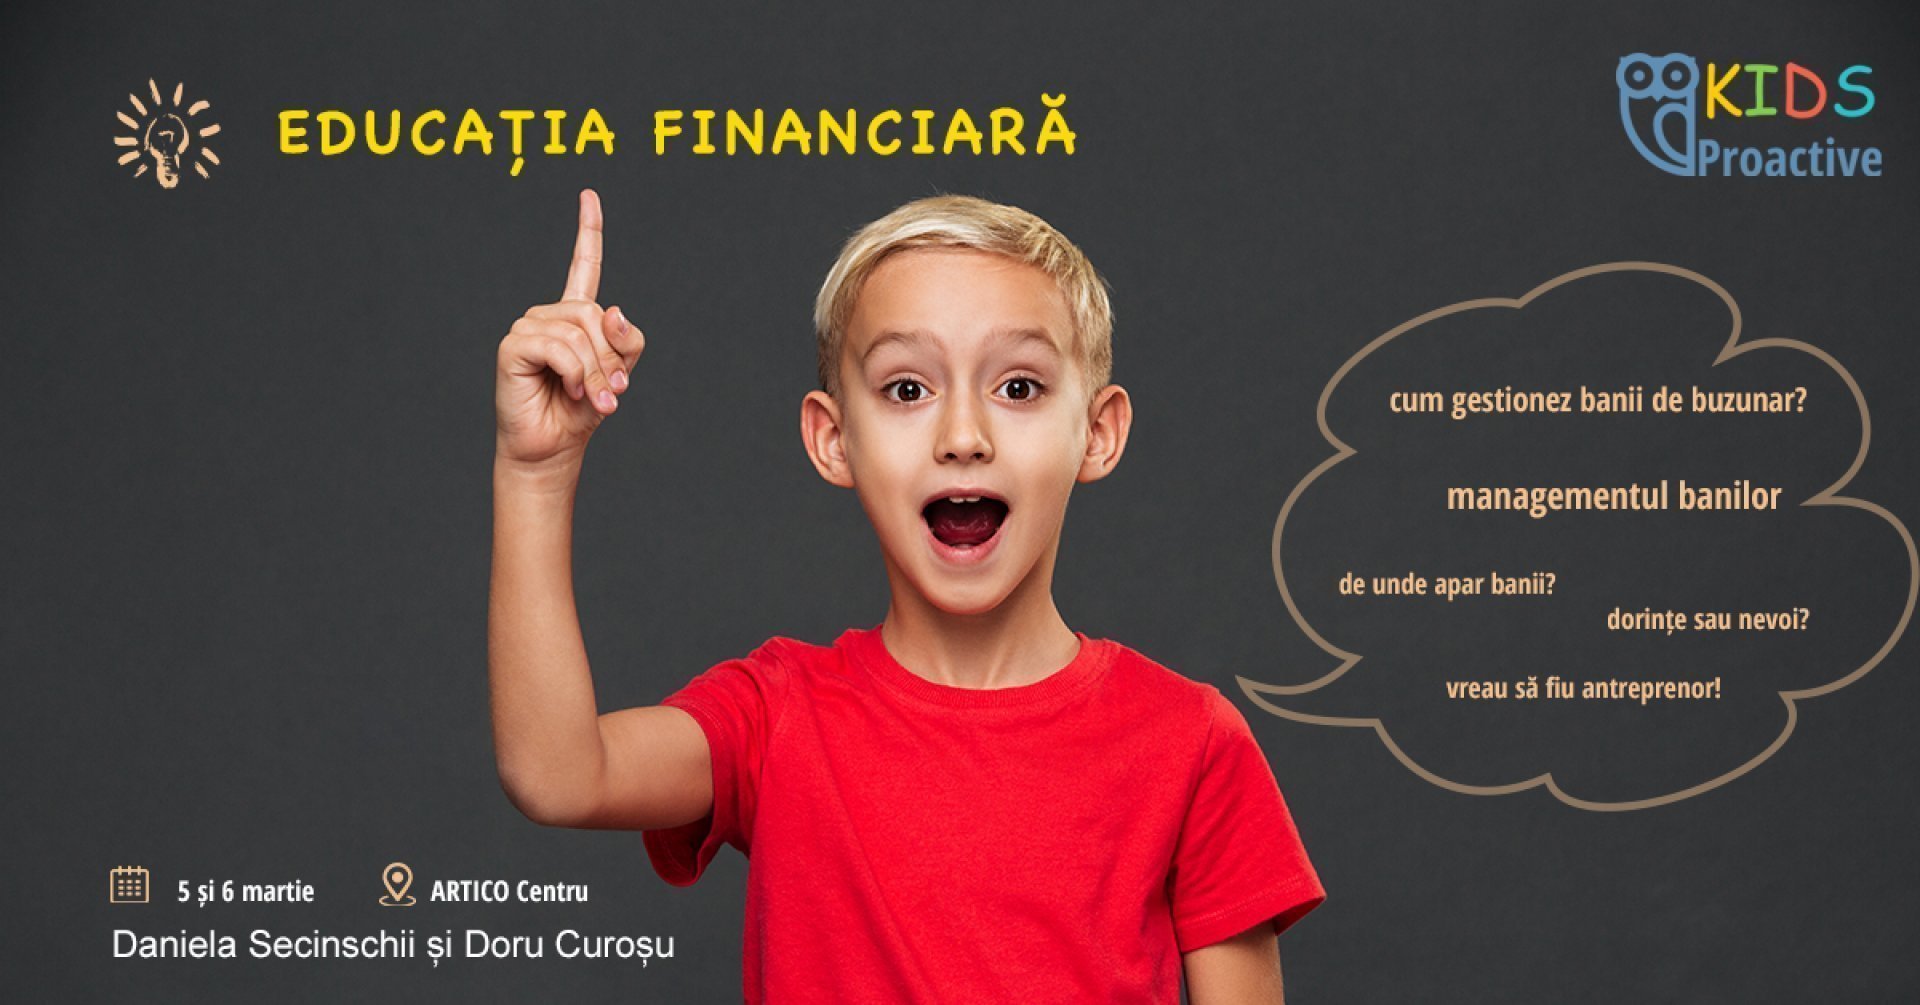 Educatie financiara pentru copii - curs interactiv 